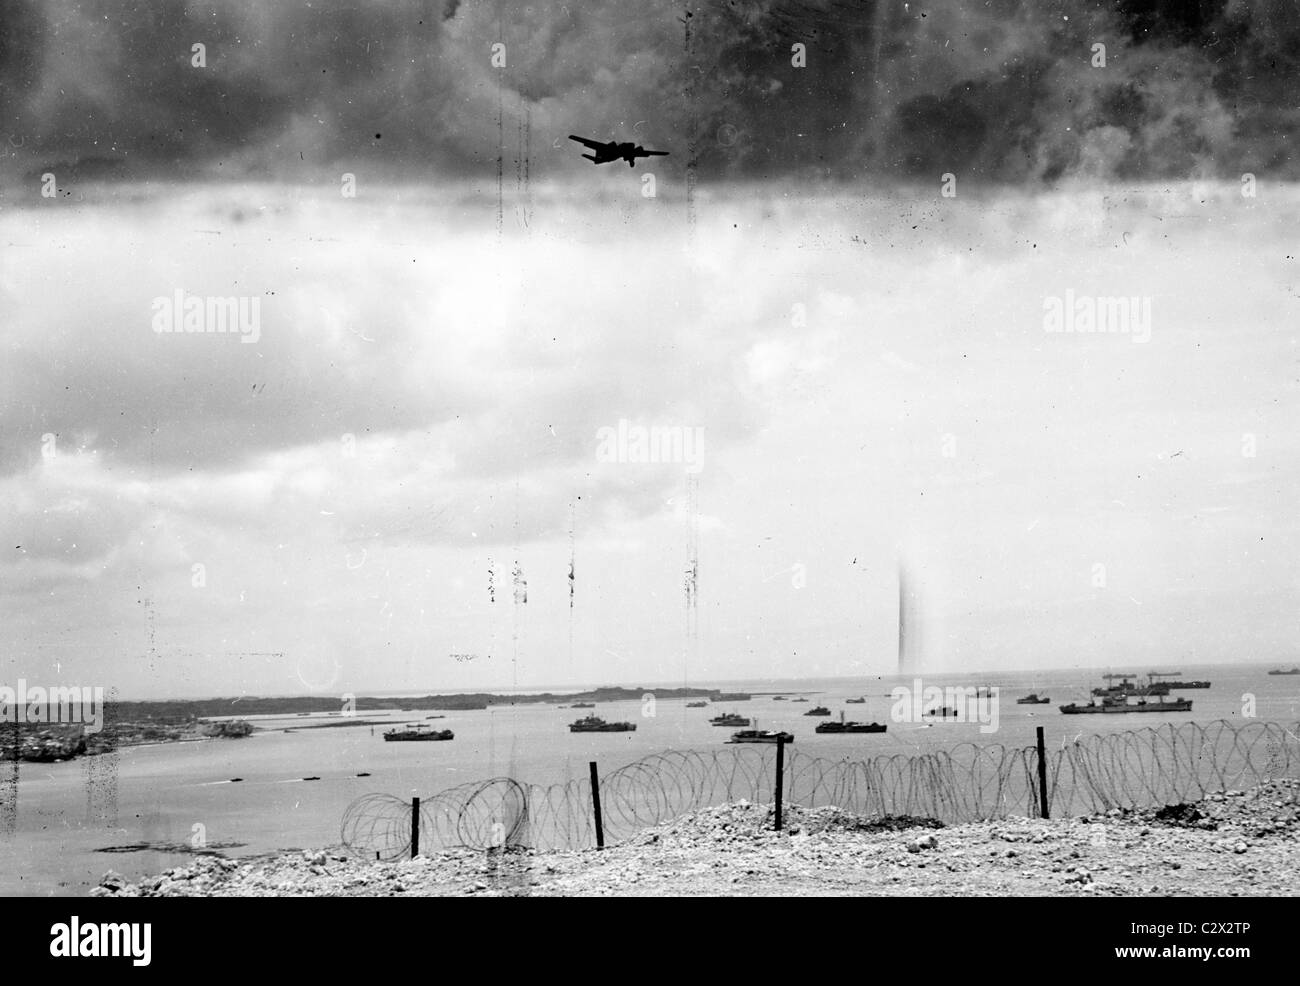 Stacheldraht Perimeter Rahmen Bucht mit Schiffen, während an einem bewölkten Tag in ein Foto gemacht auf Okinawa in circa 1945 B29 überfliegt Stockfoto